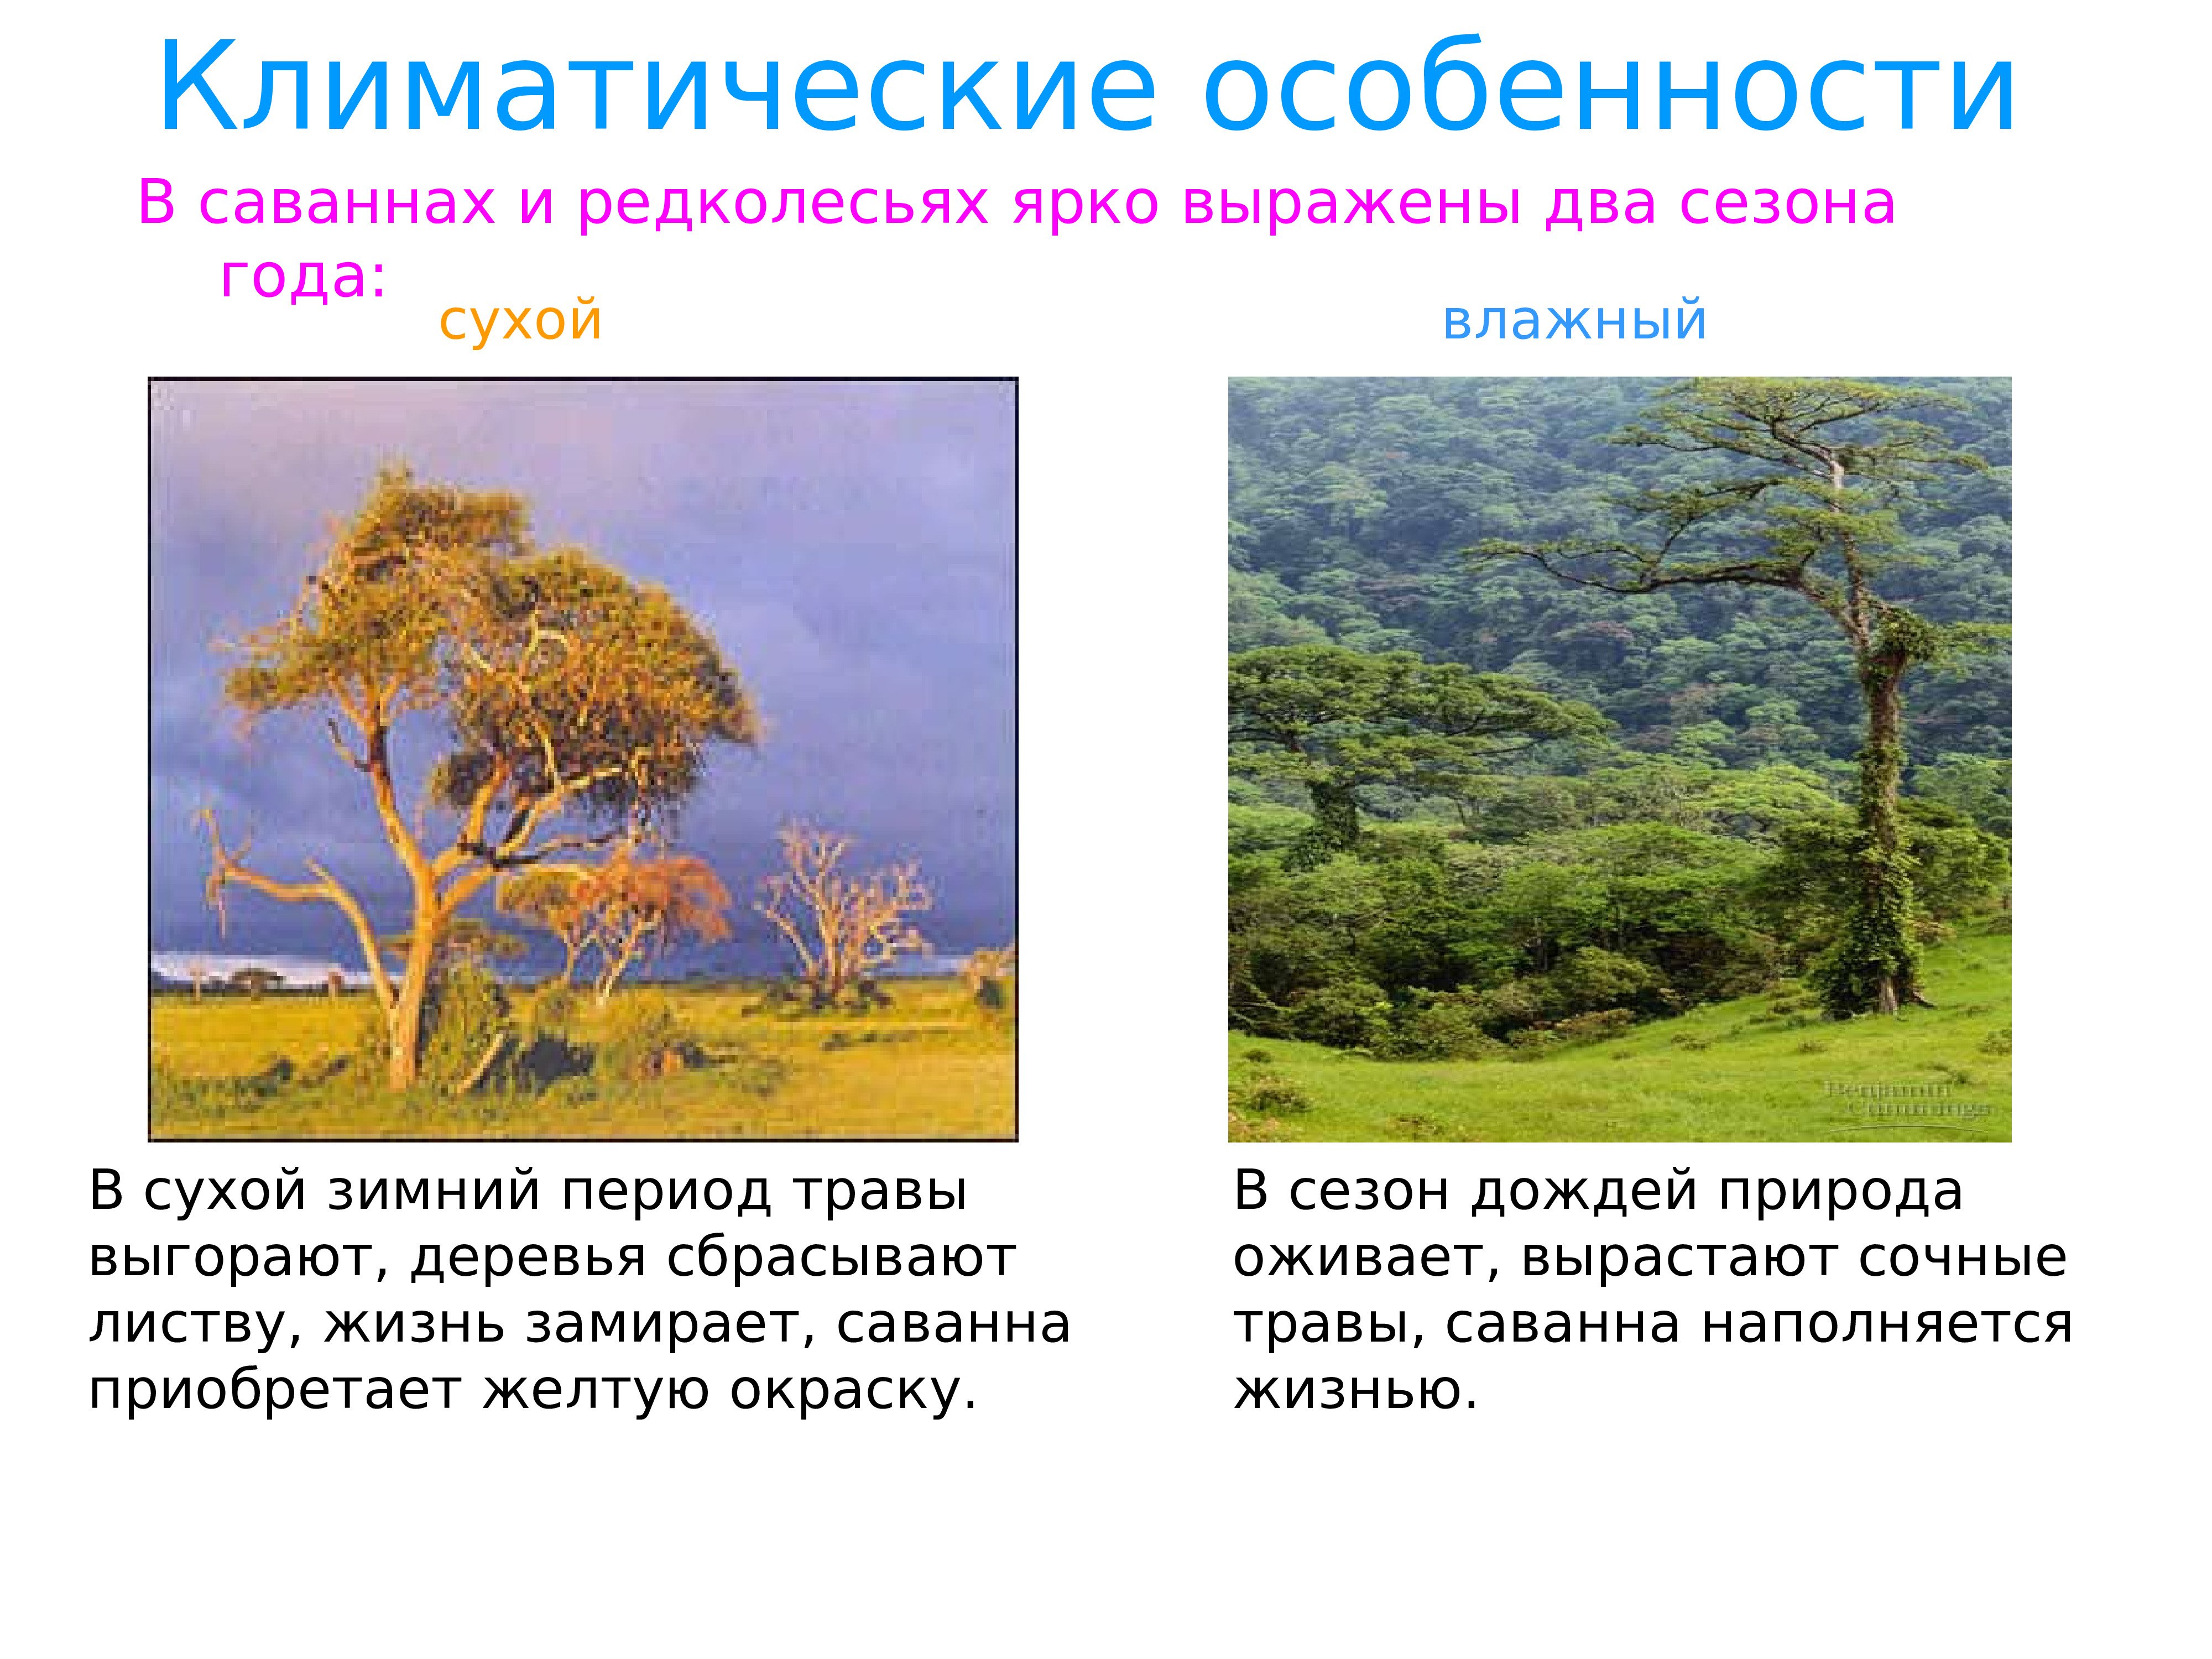 Особенности растительности саванны и редколесья